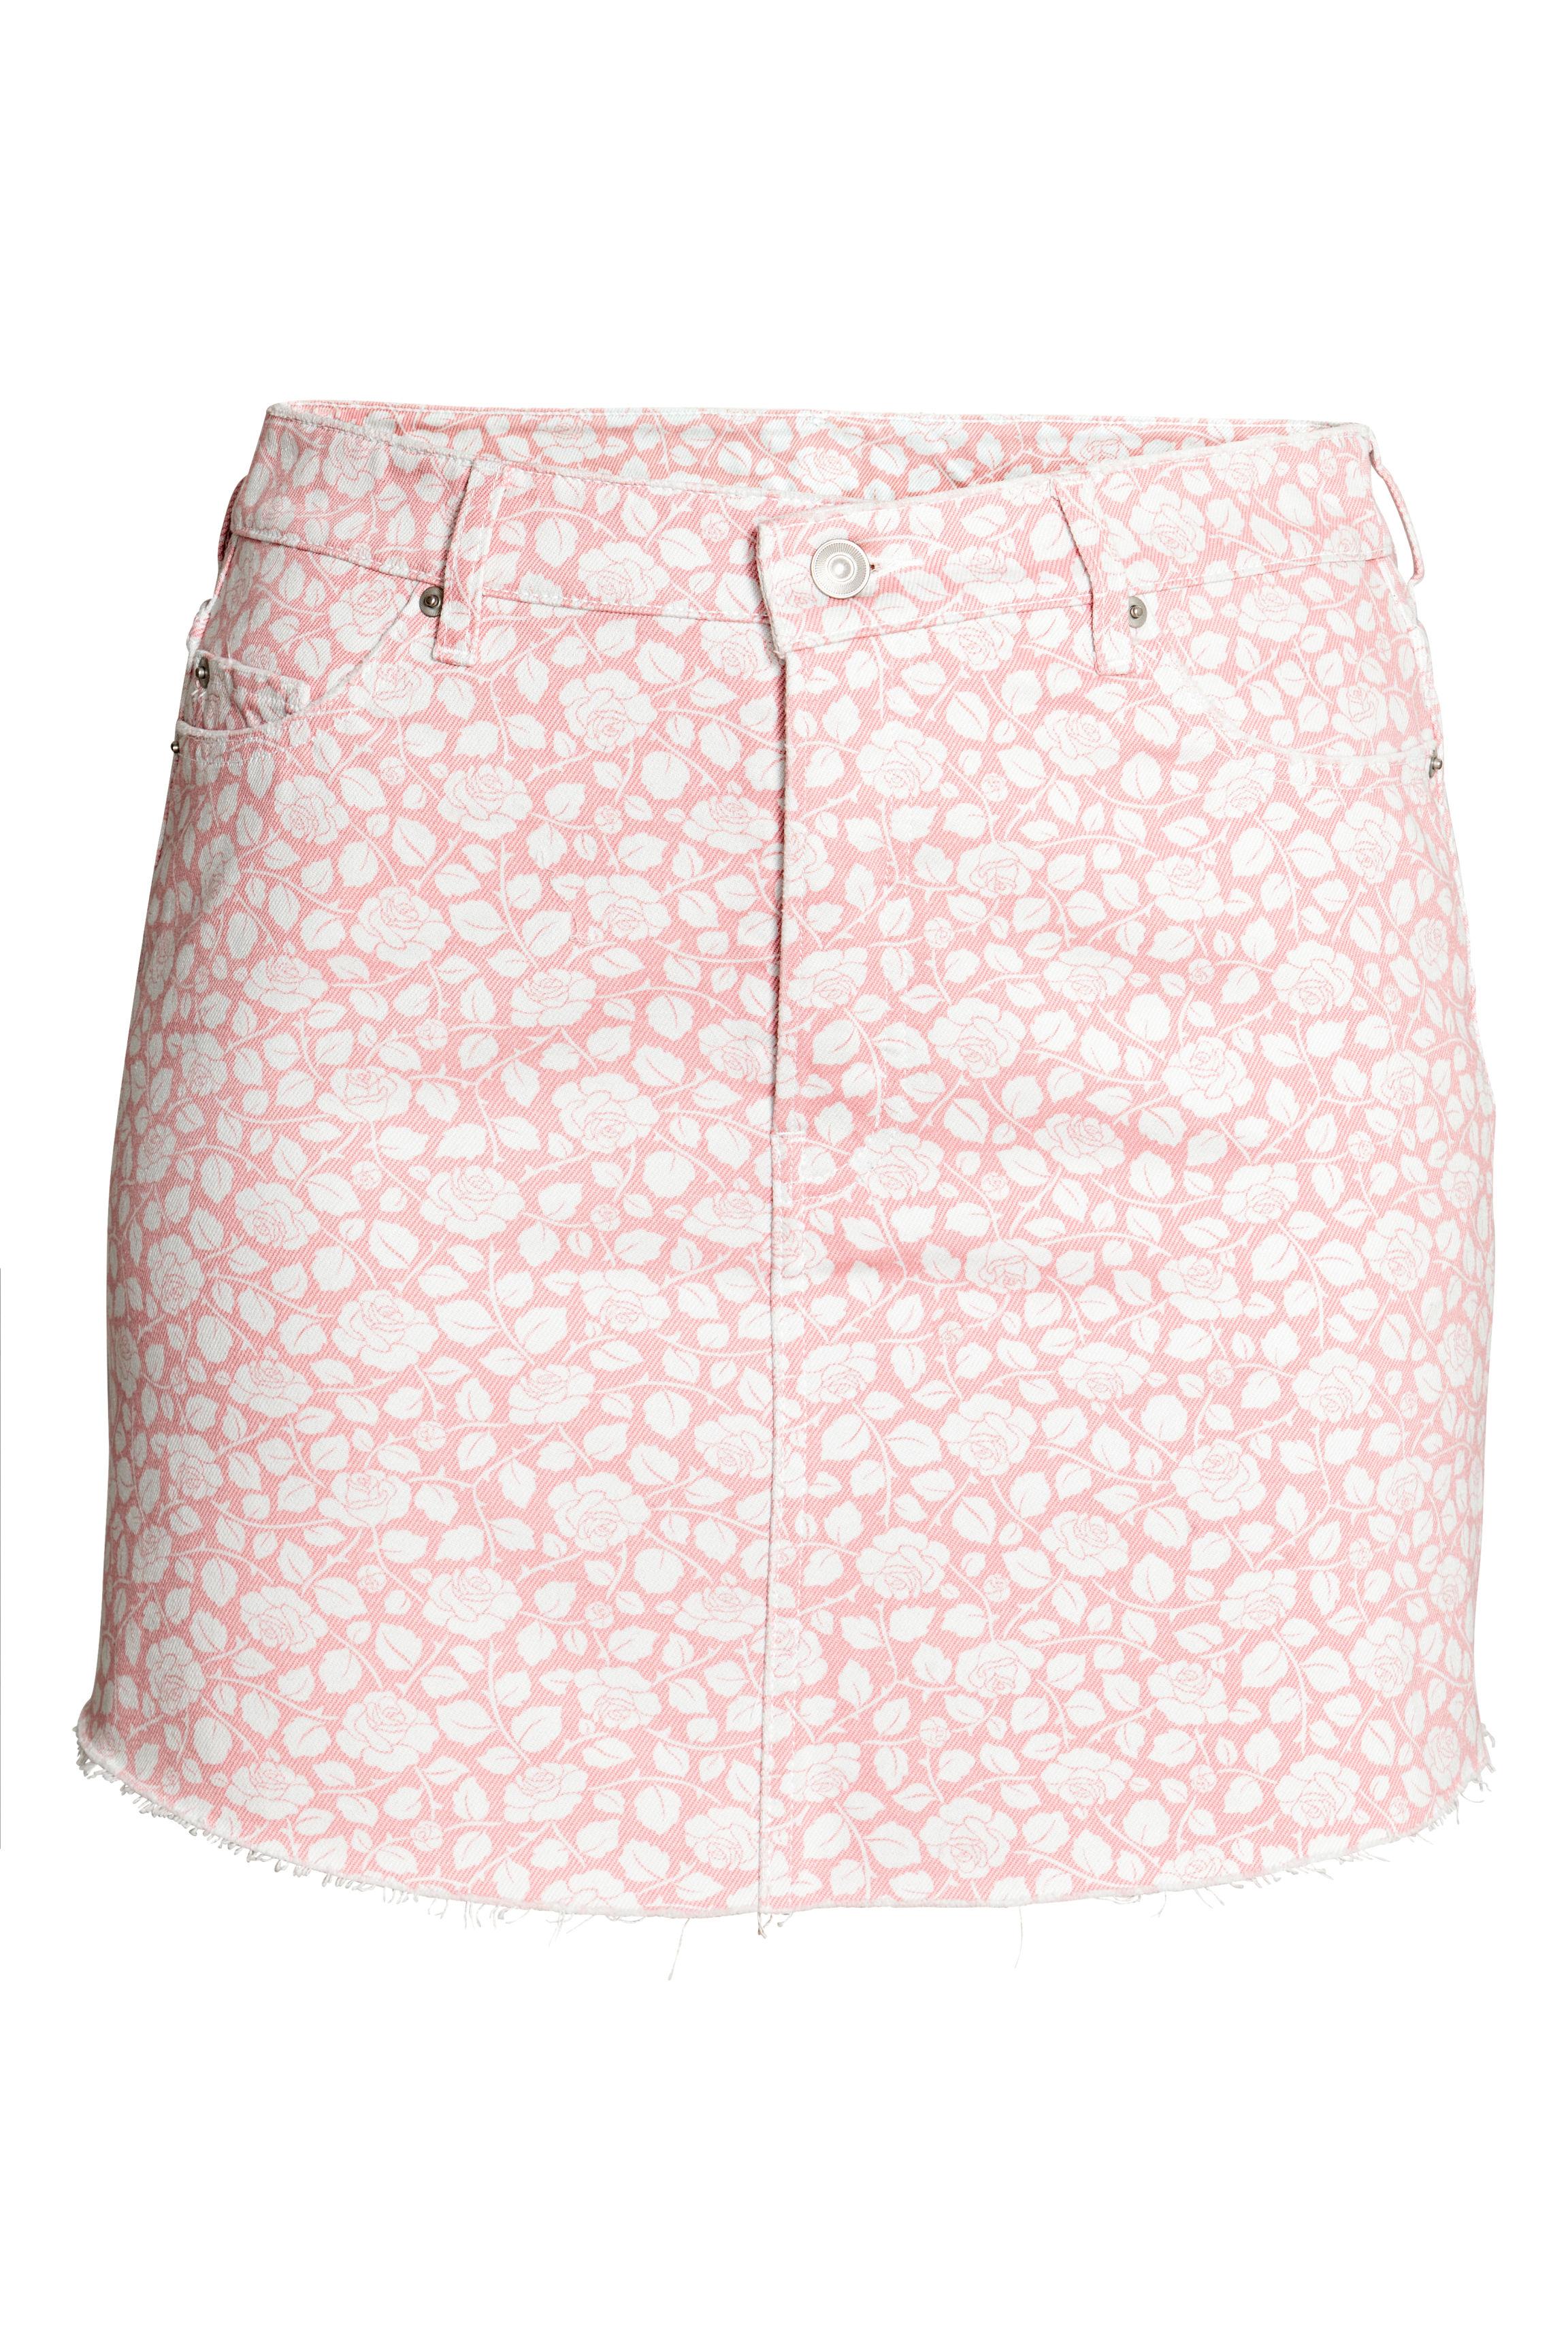 patterned denim skirt